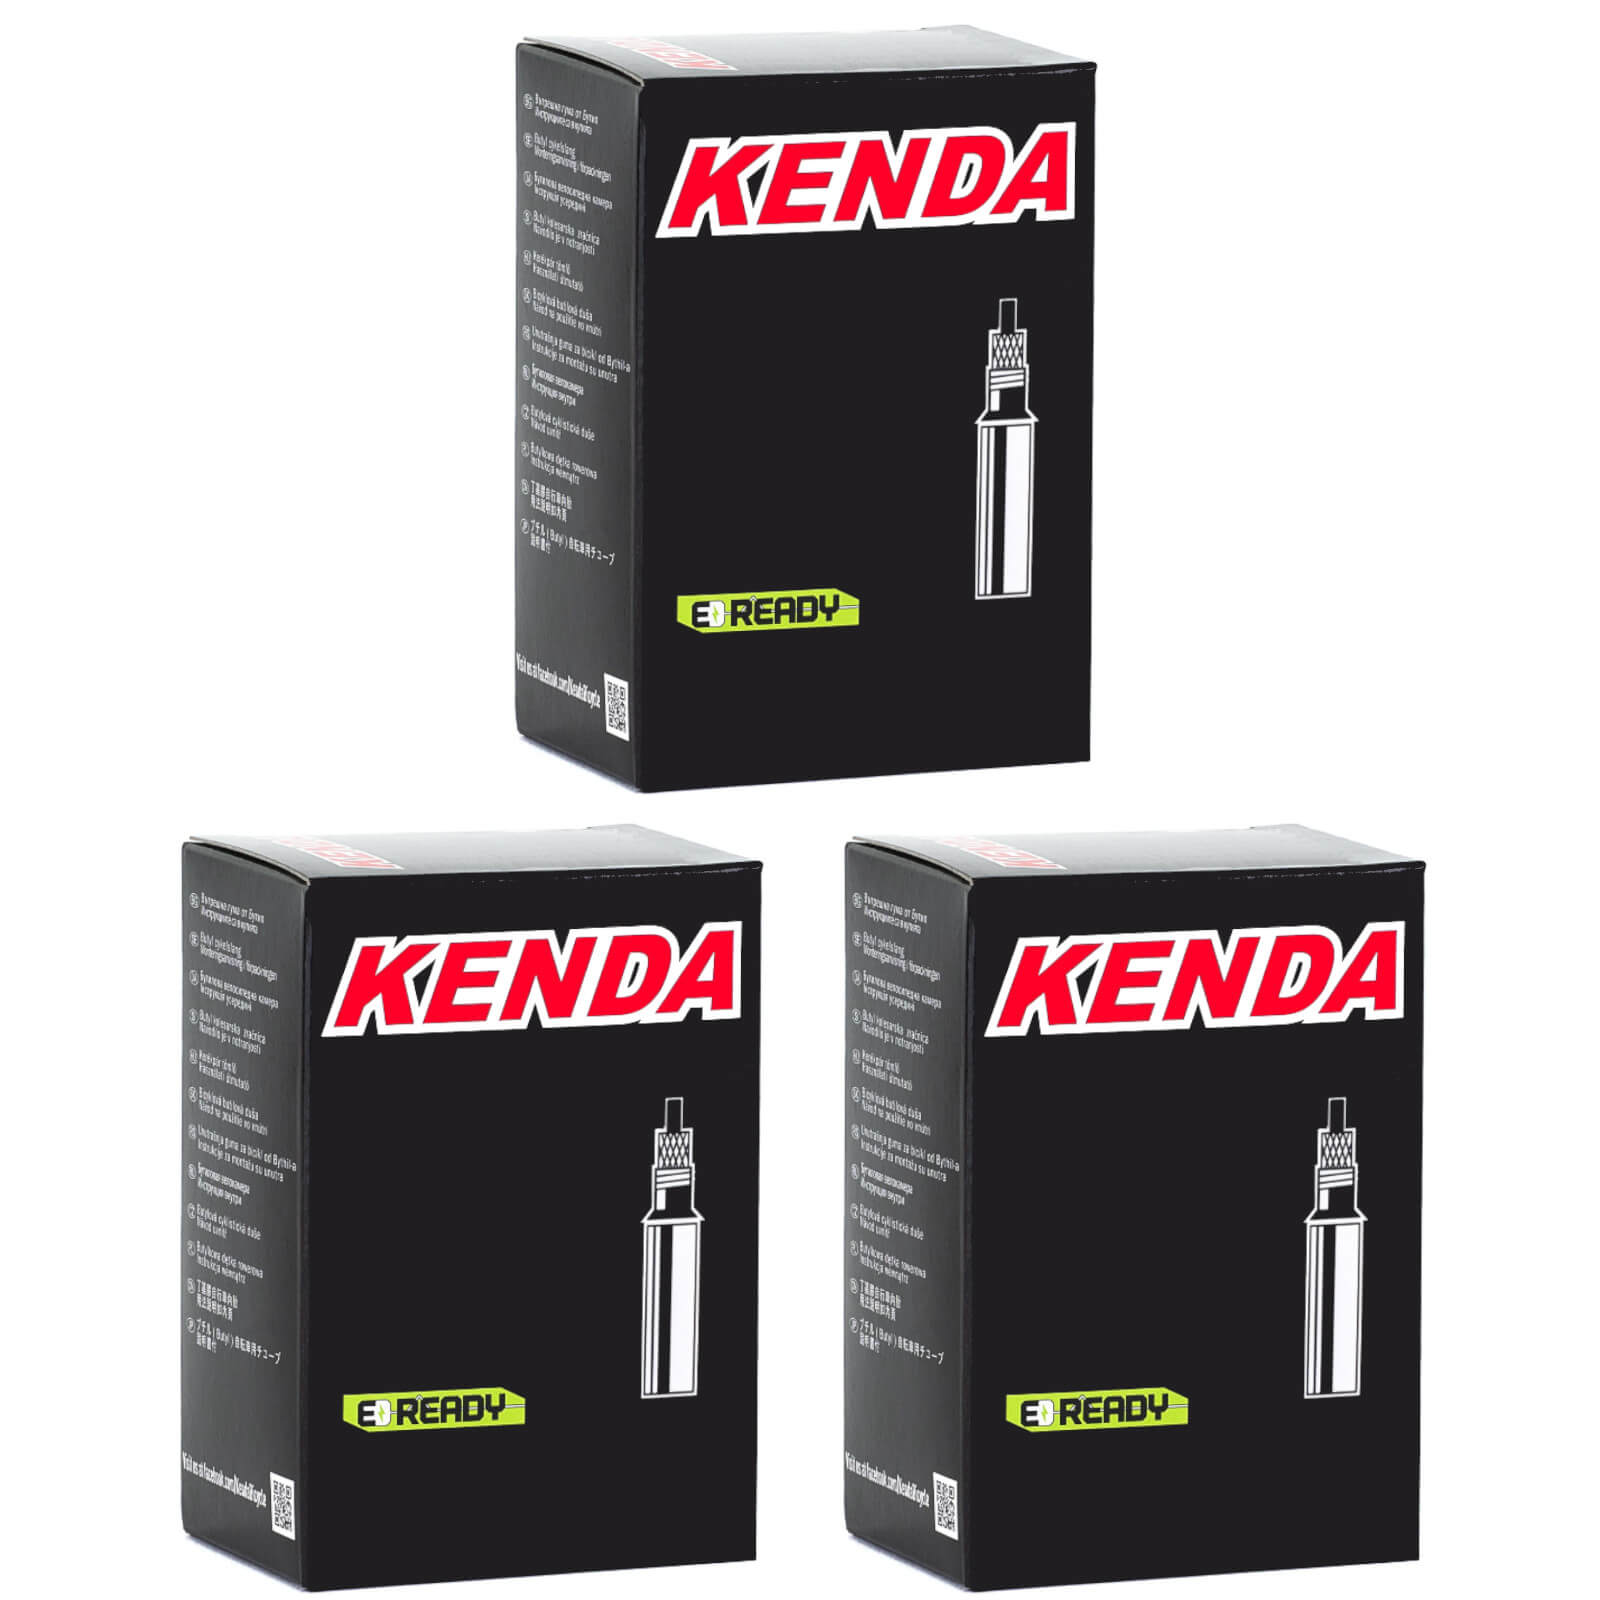 Kenda 700x20-28c 700c Presta Valve Bike Inner Tube Pack of 3